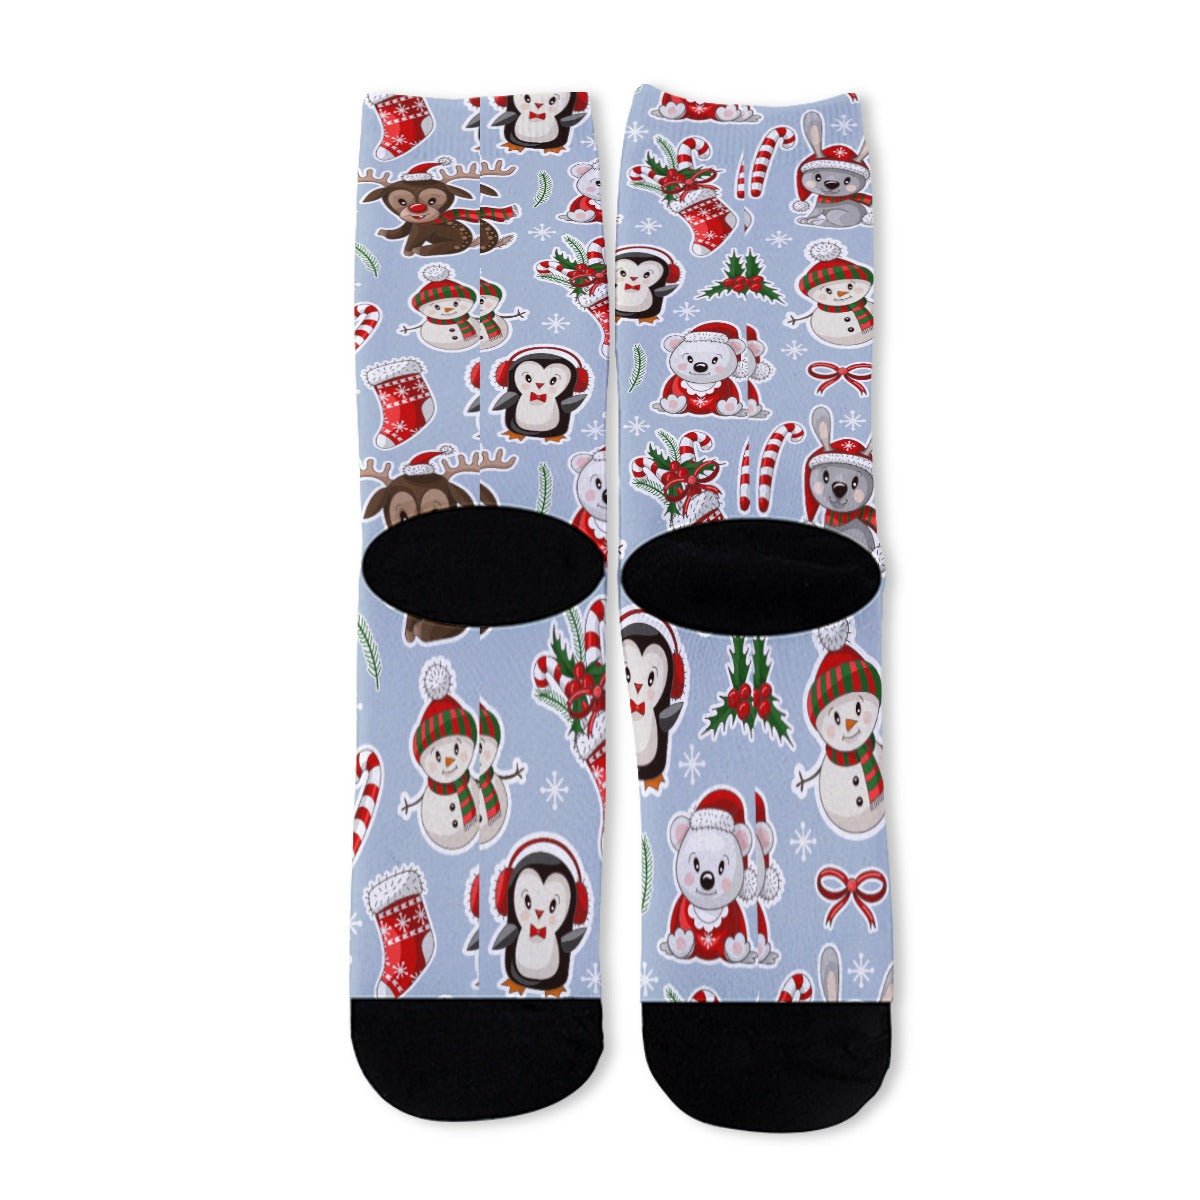 Unisex Long Socks - Polar Kawaii - Festive Style